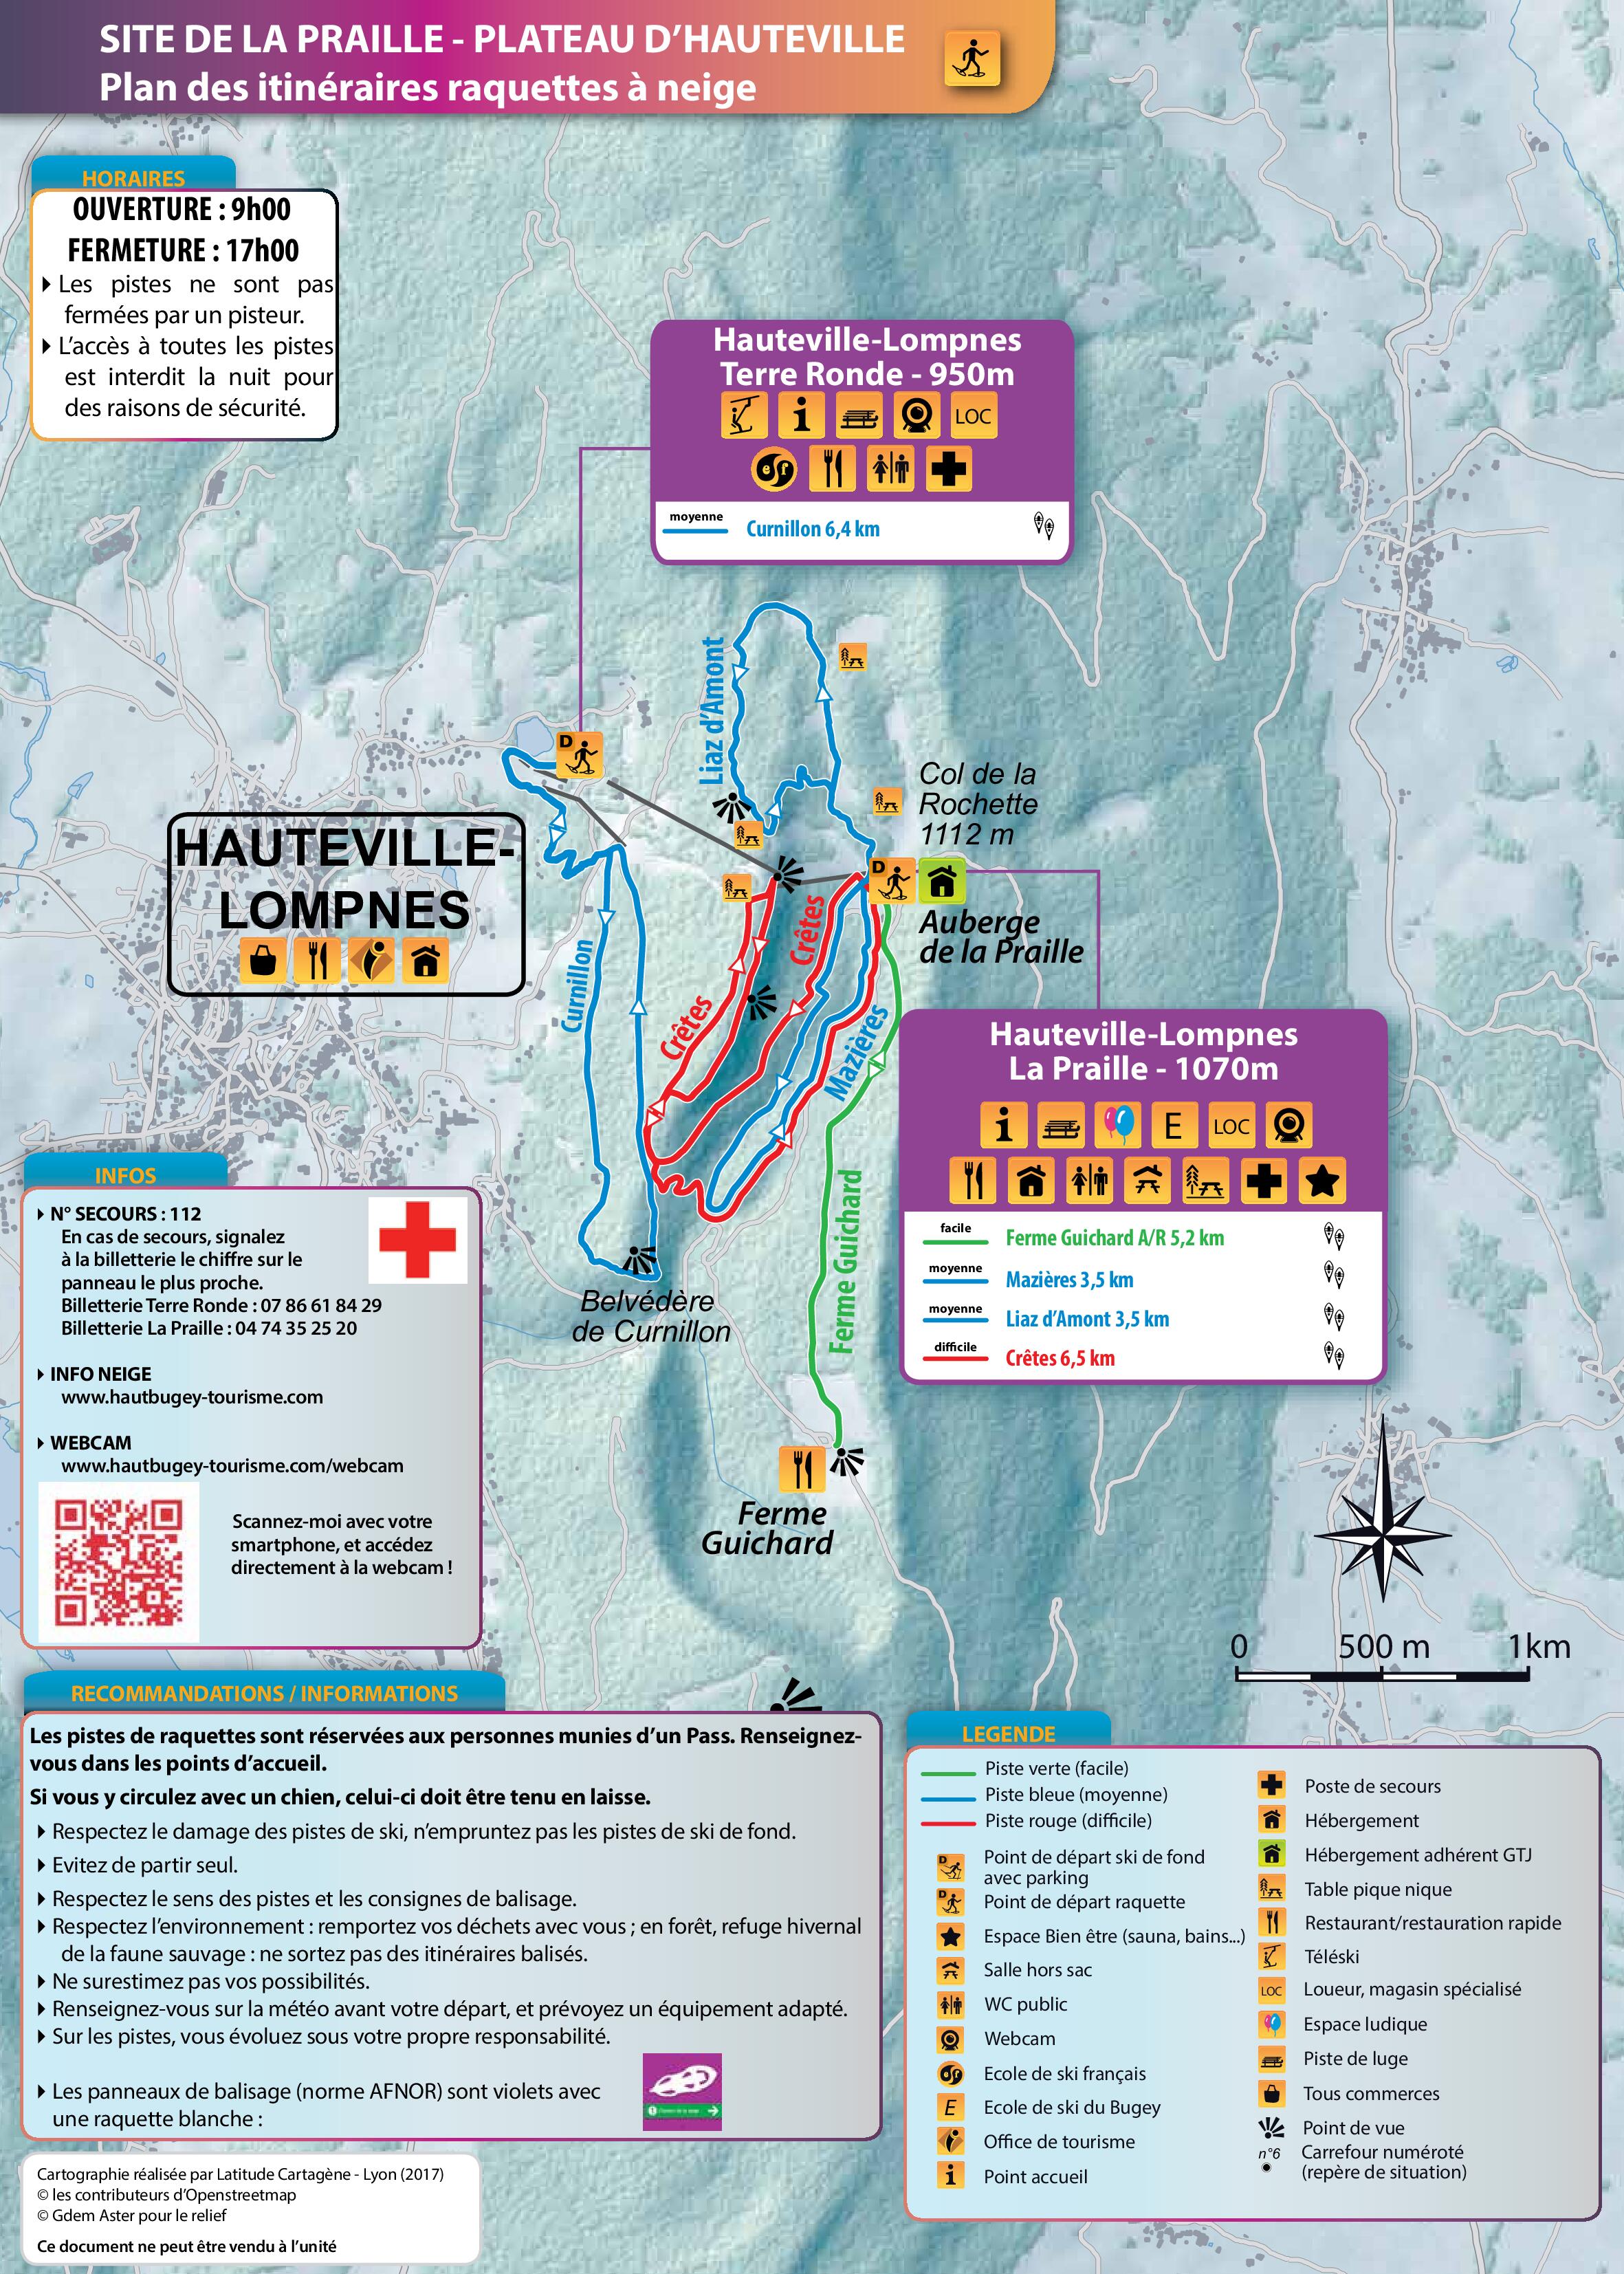 Plan des pistesraquettes à neige Plateau d'Hauteville 